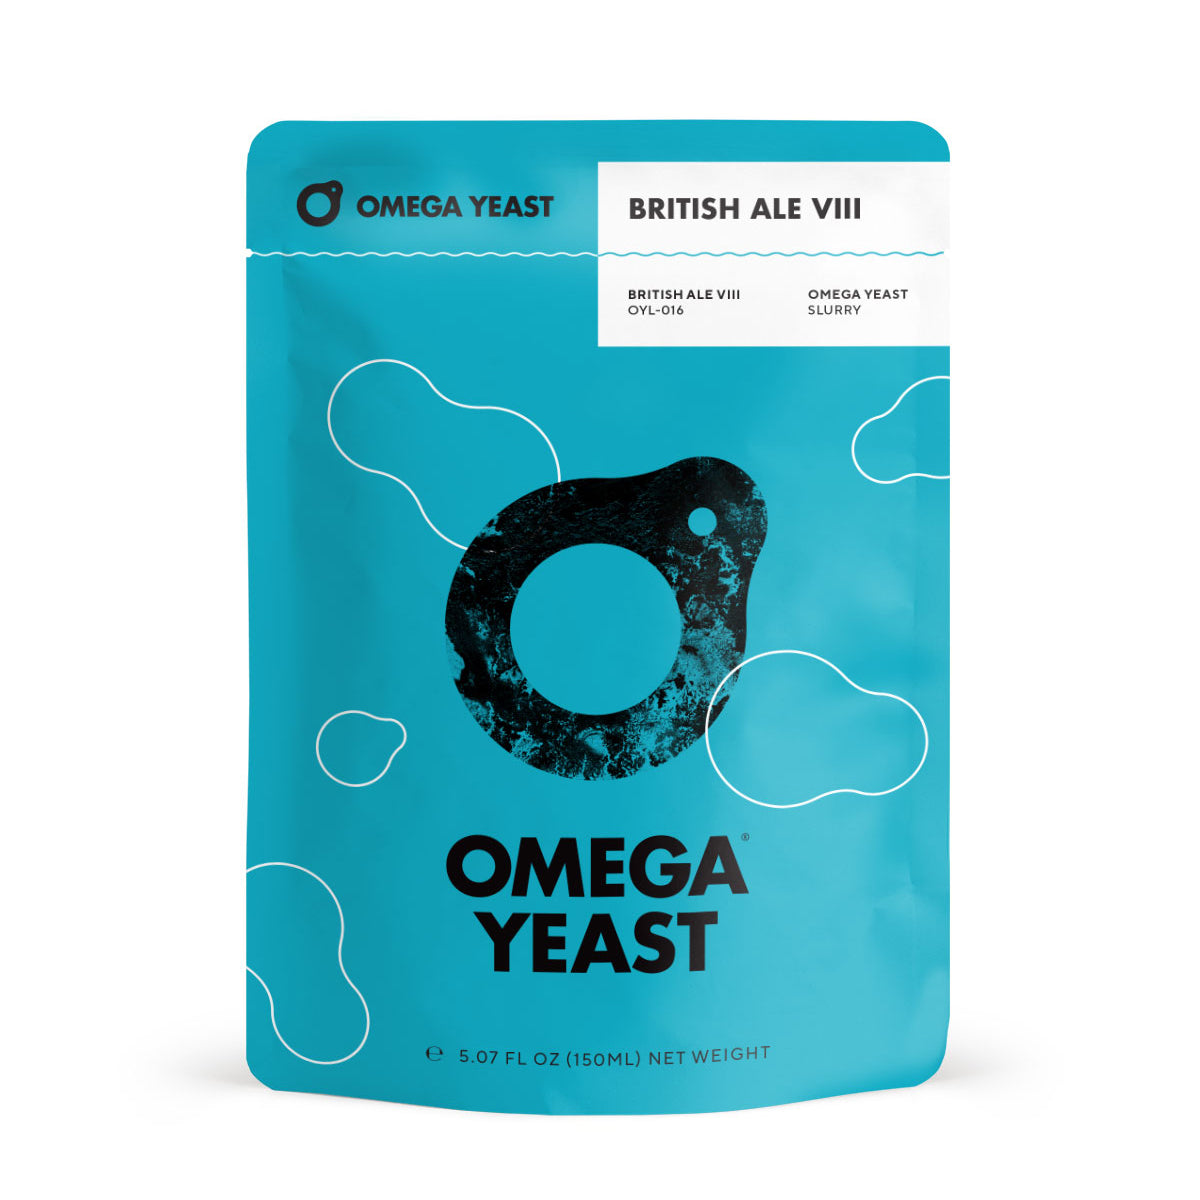 Omega Yeast OYL-016 British Ale VIII